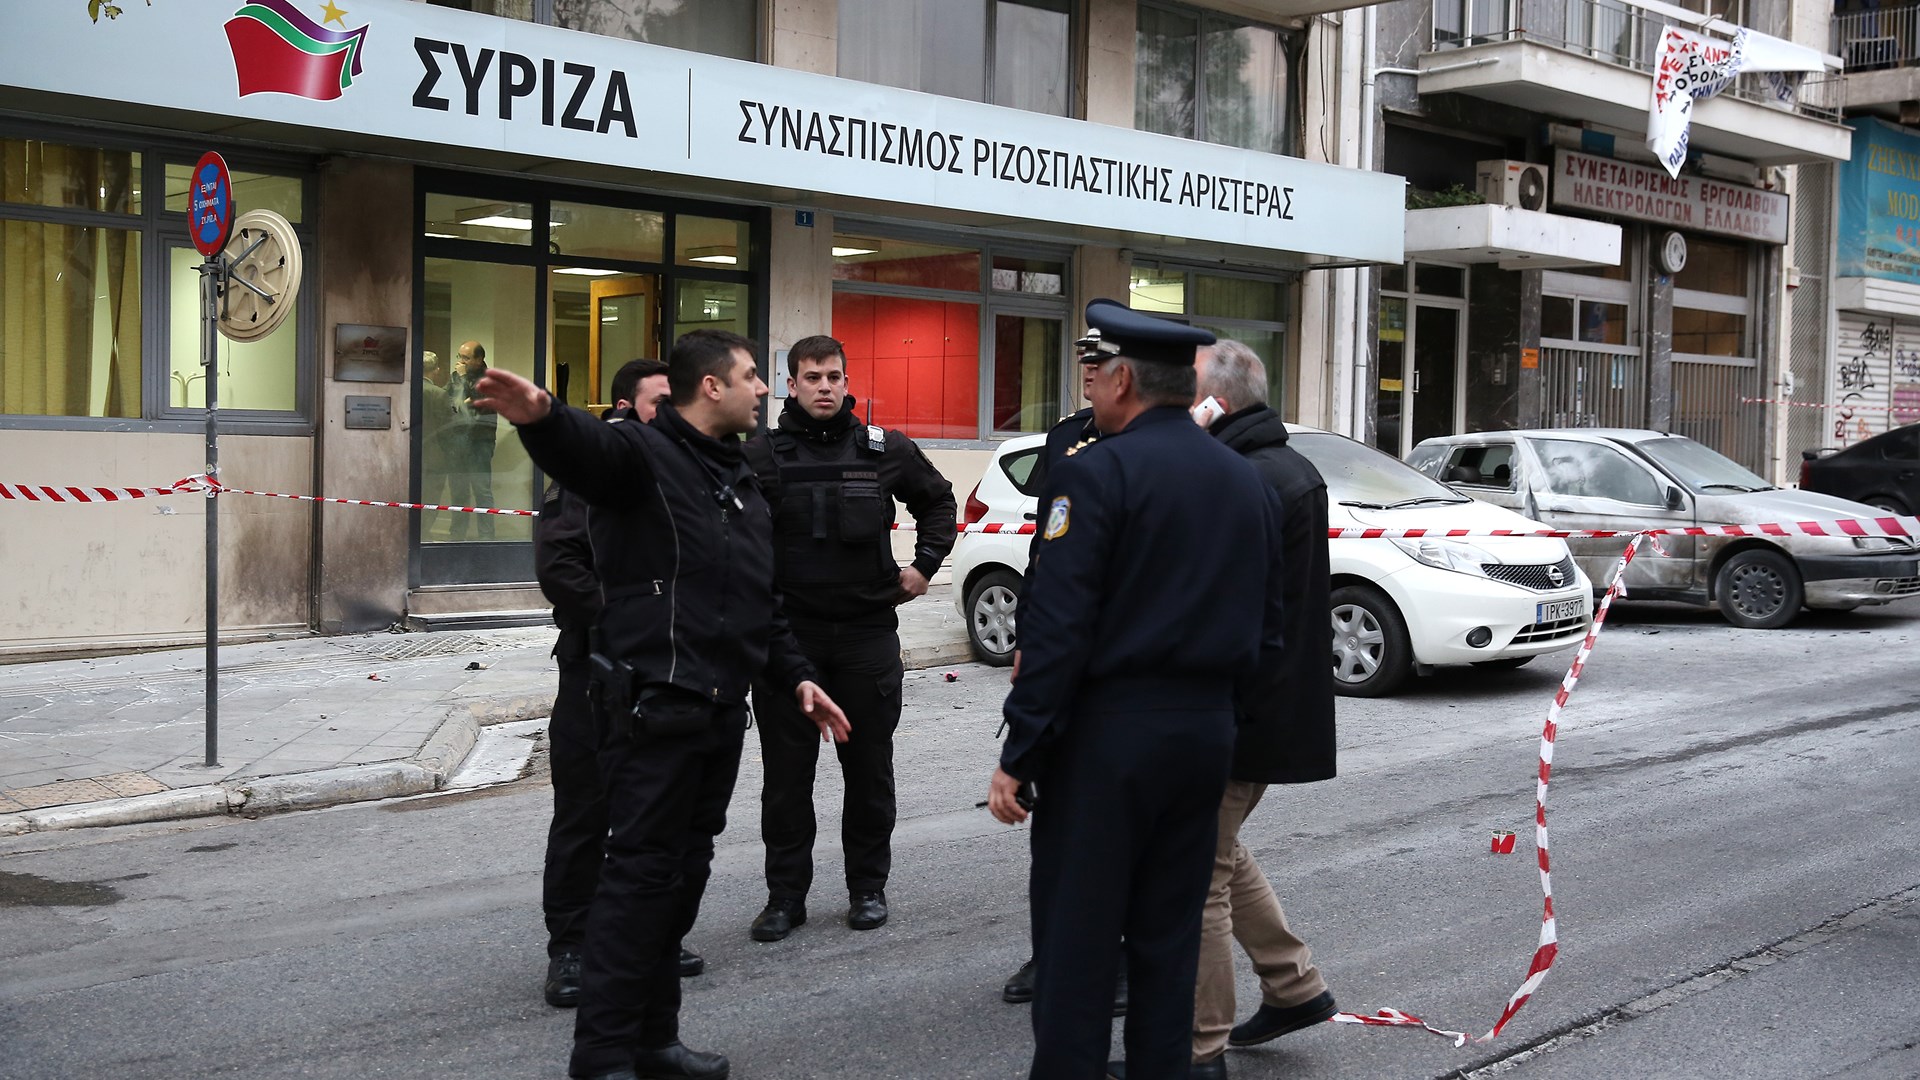 Φωτογραφίες από την επίθεση με μολότοφ στα γραφεία του ΣΥΡΙΖΑ